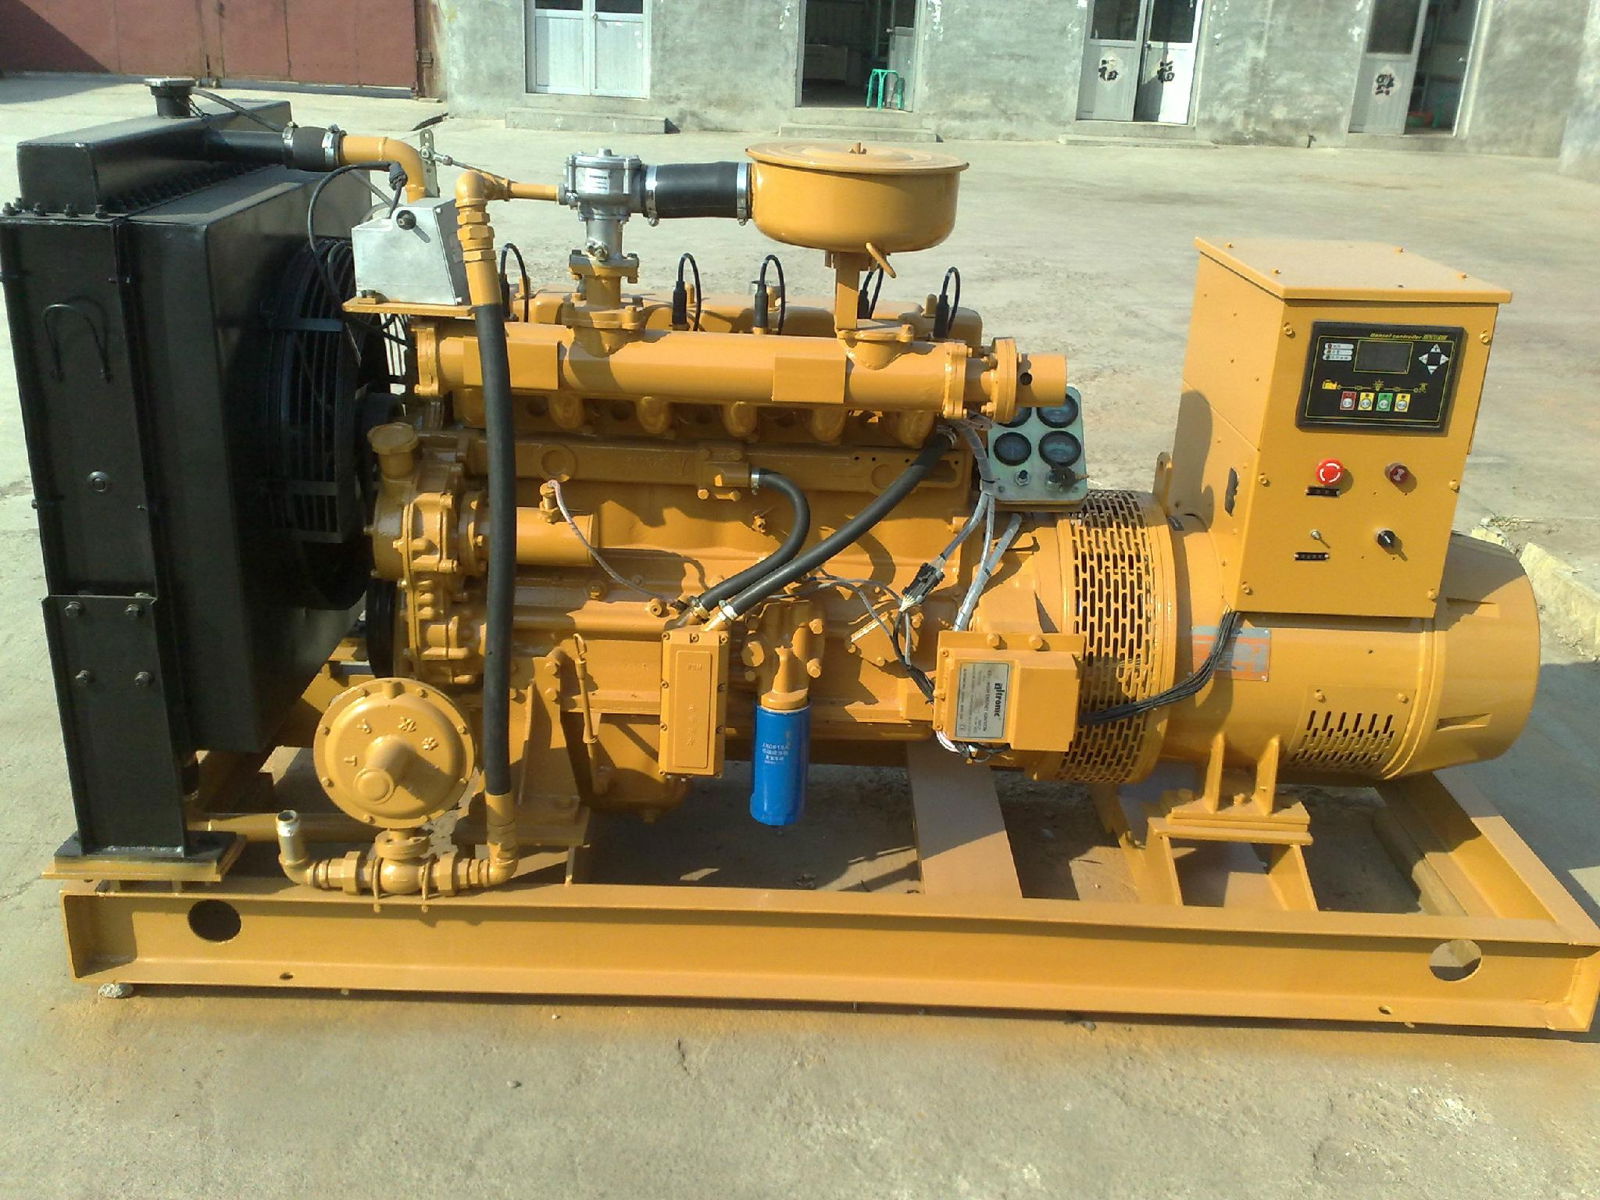 Diesel generator set 4